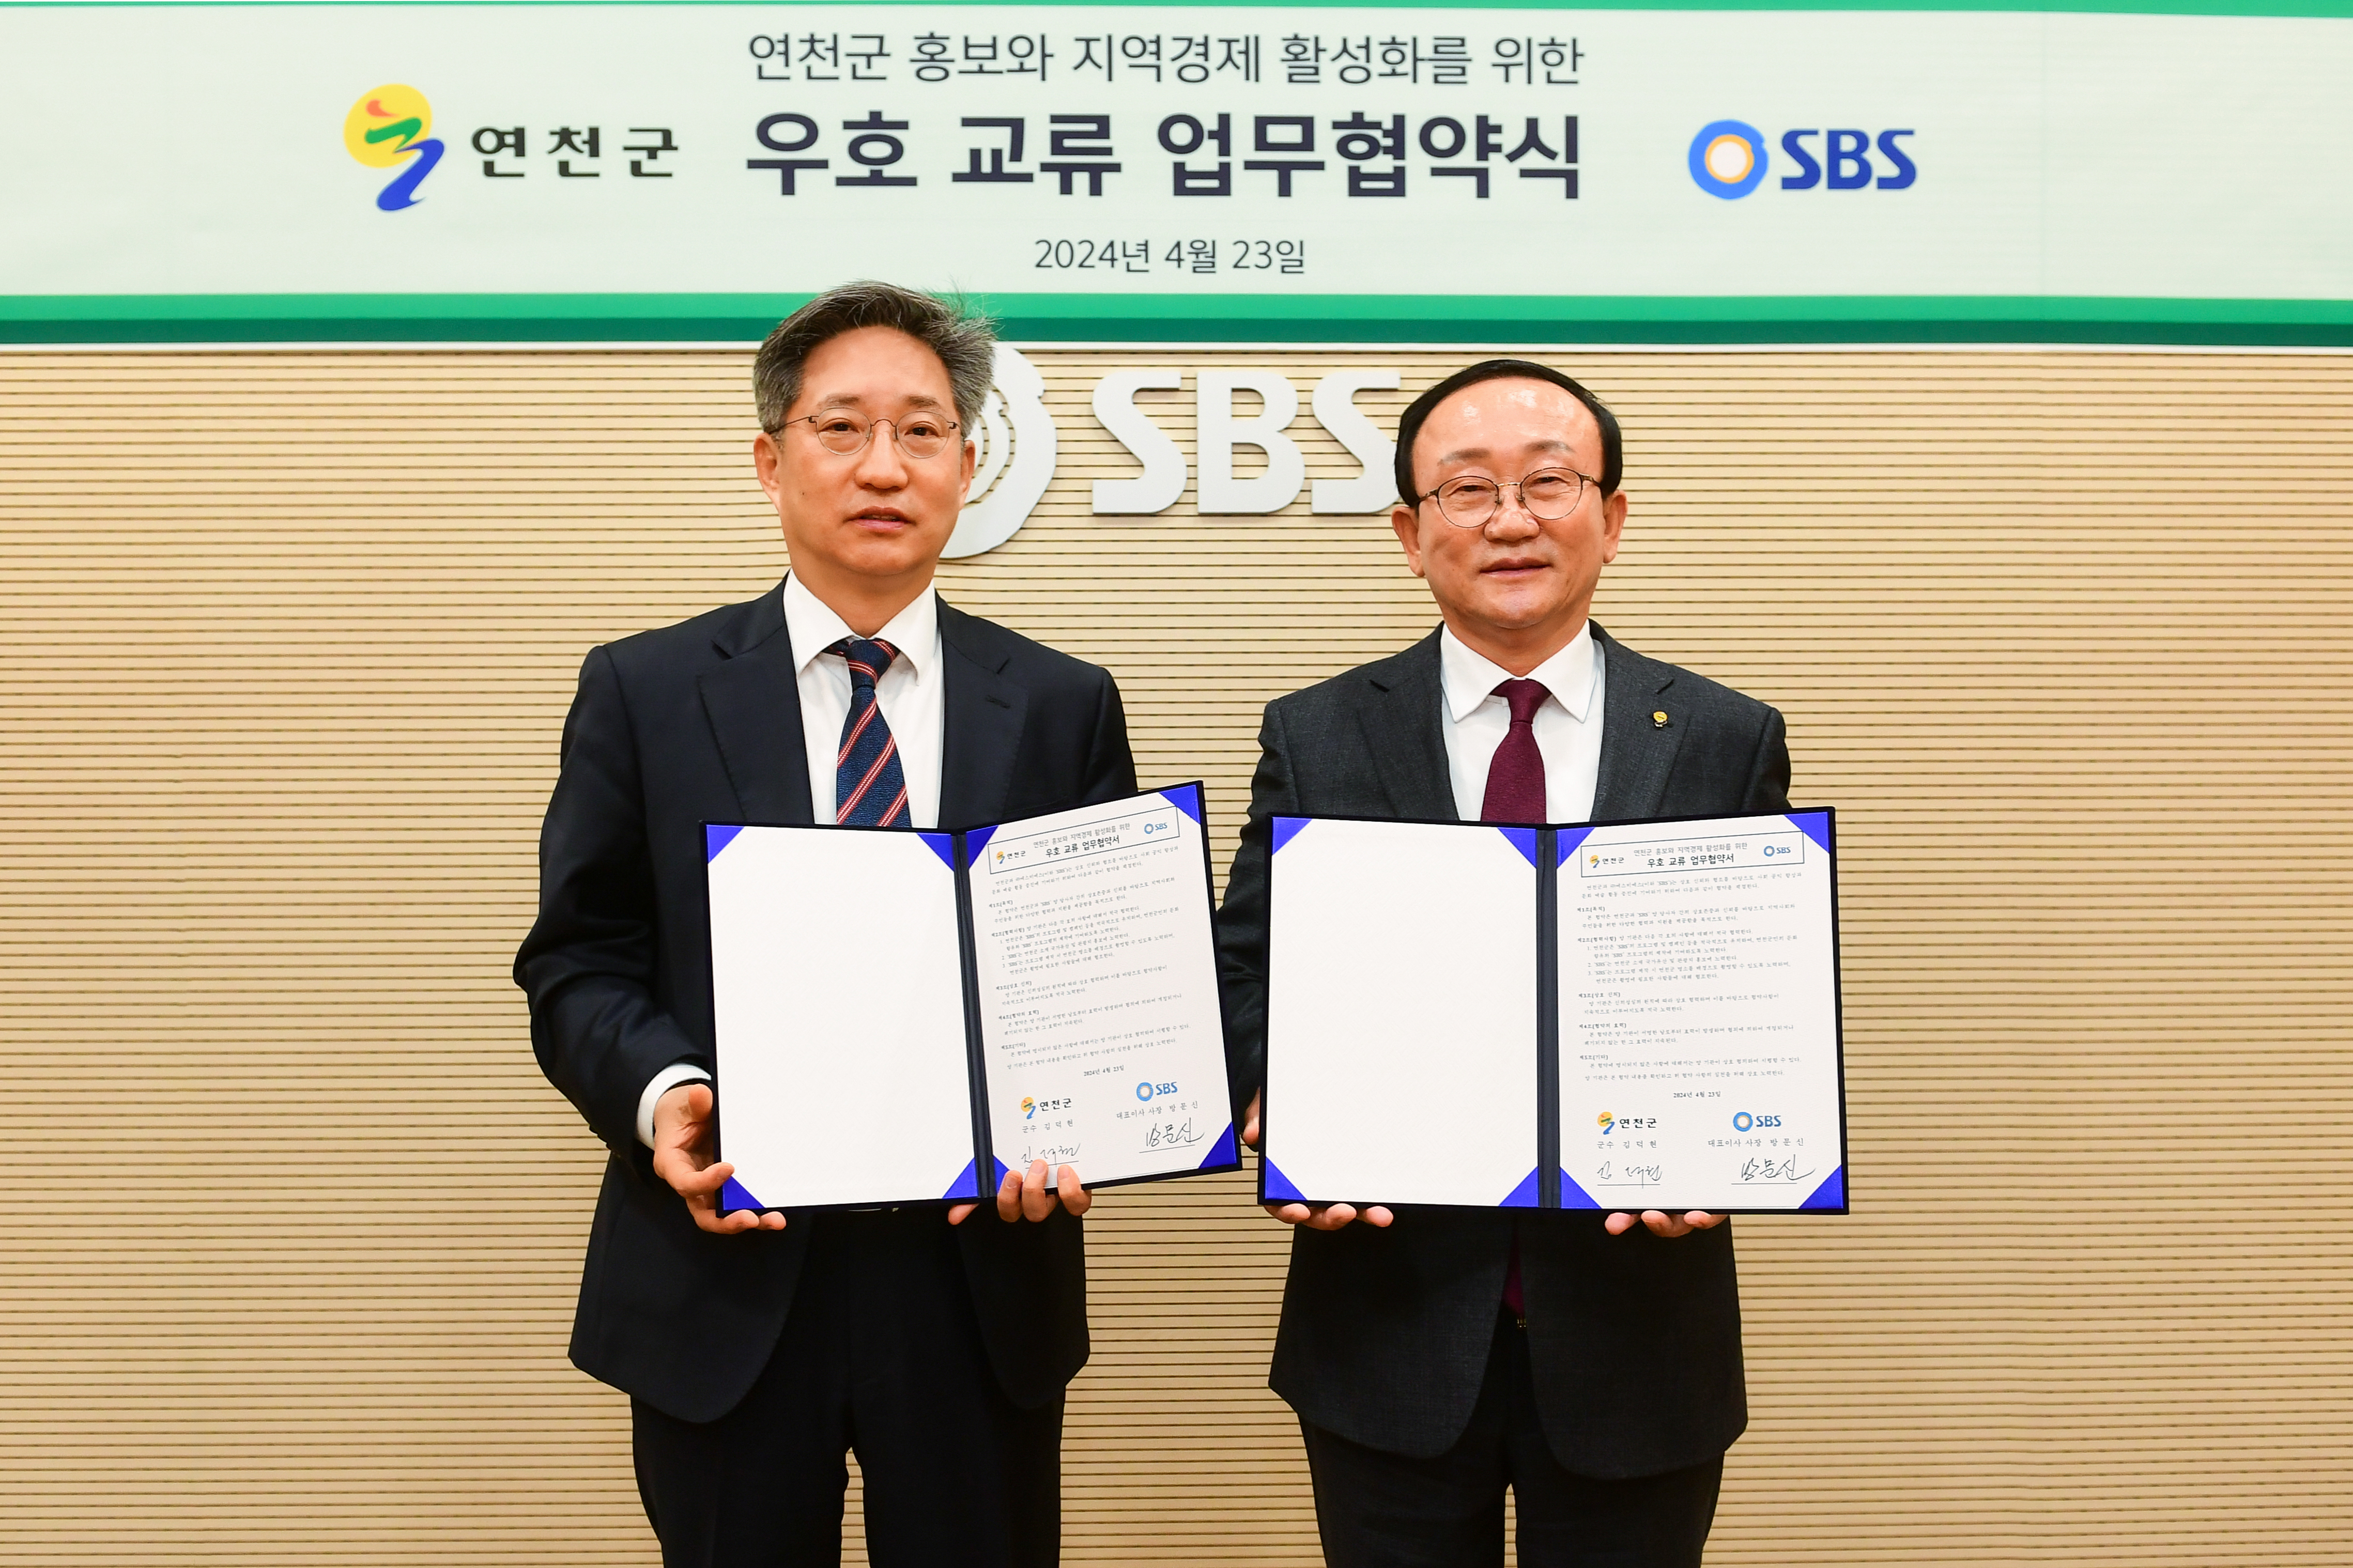 연천군-SBS, 지역 홍보 및 경제 활성화 위한 협약 체결 이미지 1 - 본문에 자세한설명을 제공합니다.